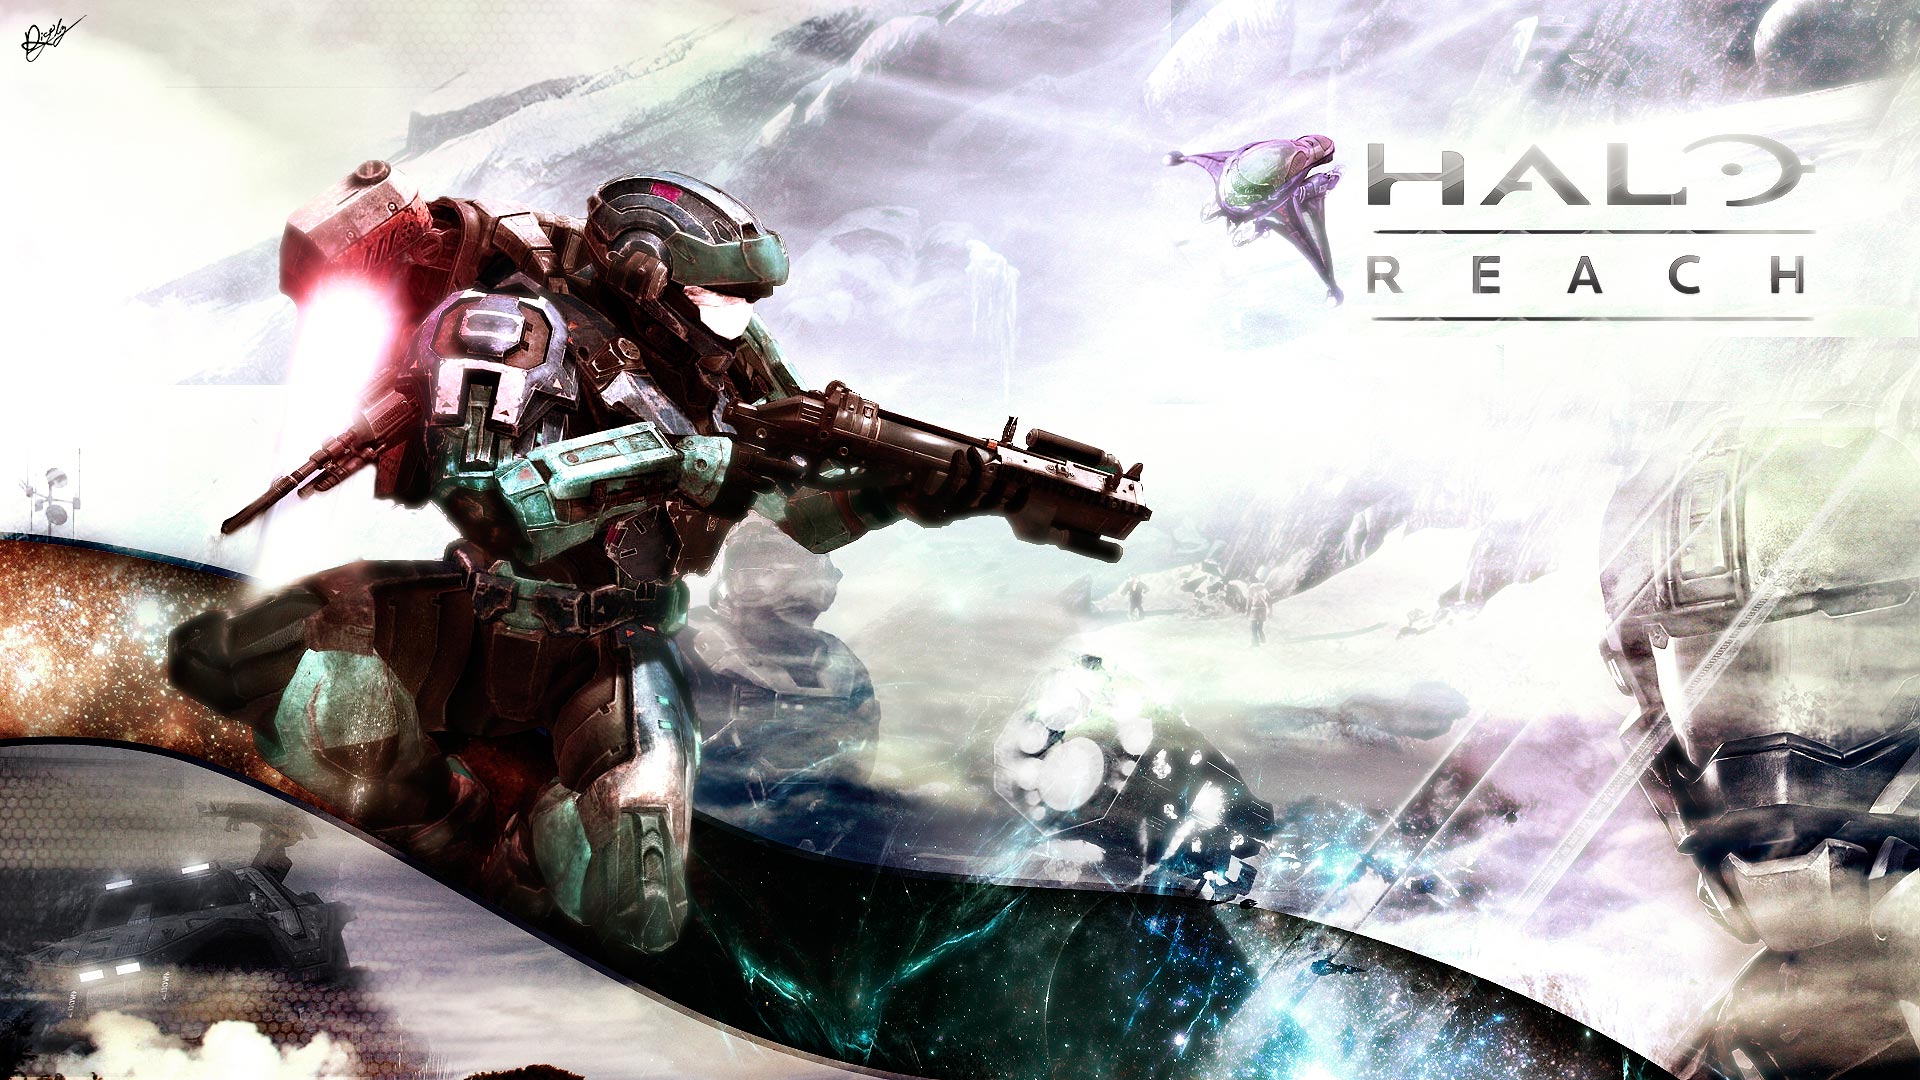 Hd Halo Reach Image - Halo Reach Wallpaper Fanart - HD Wallpaper 